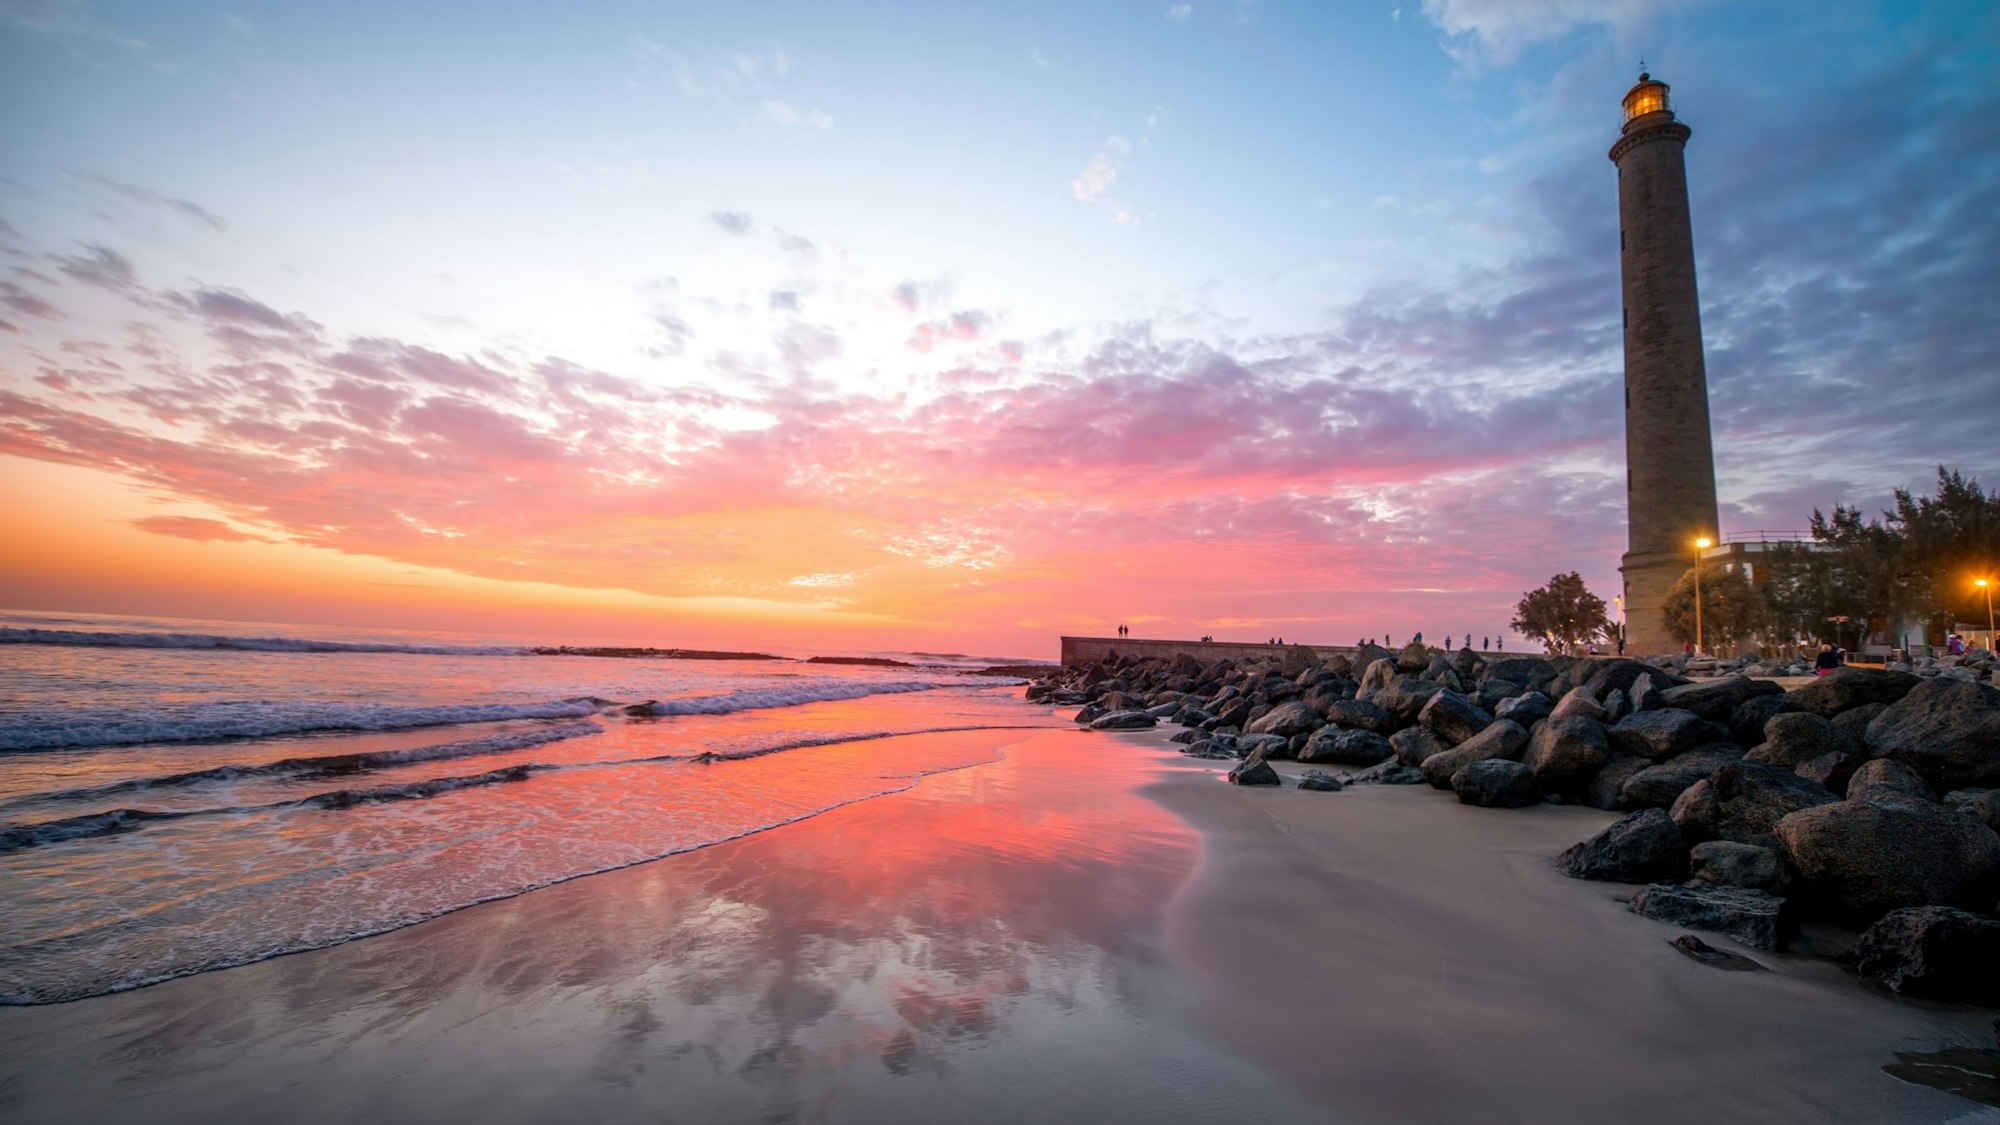 Auf dem Foto sieht man die Playa de Maspalomas samt Leuchtturm im Sonnenuntergang.